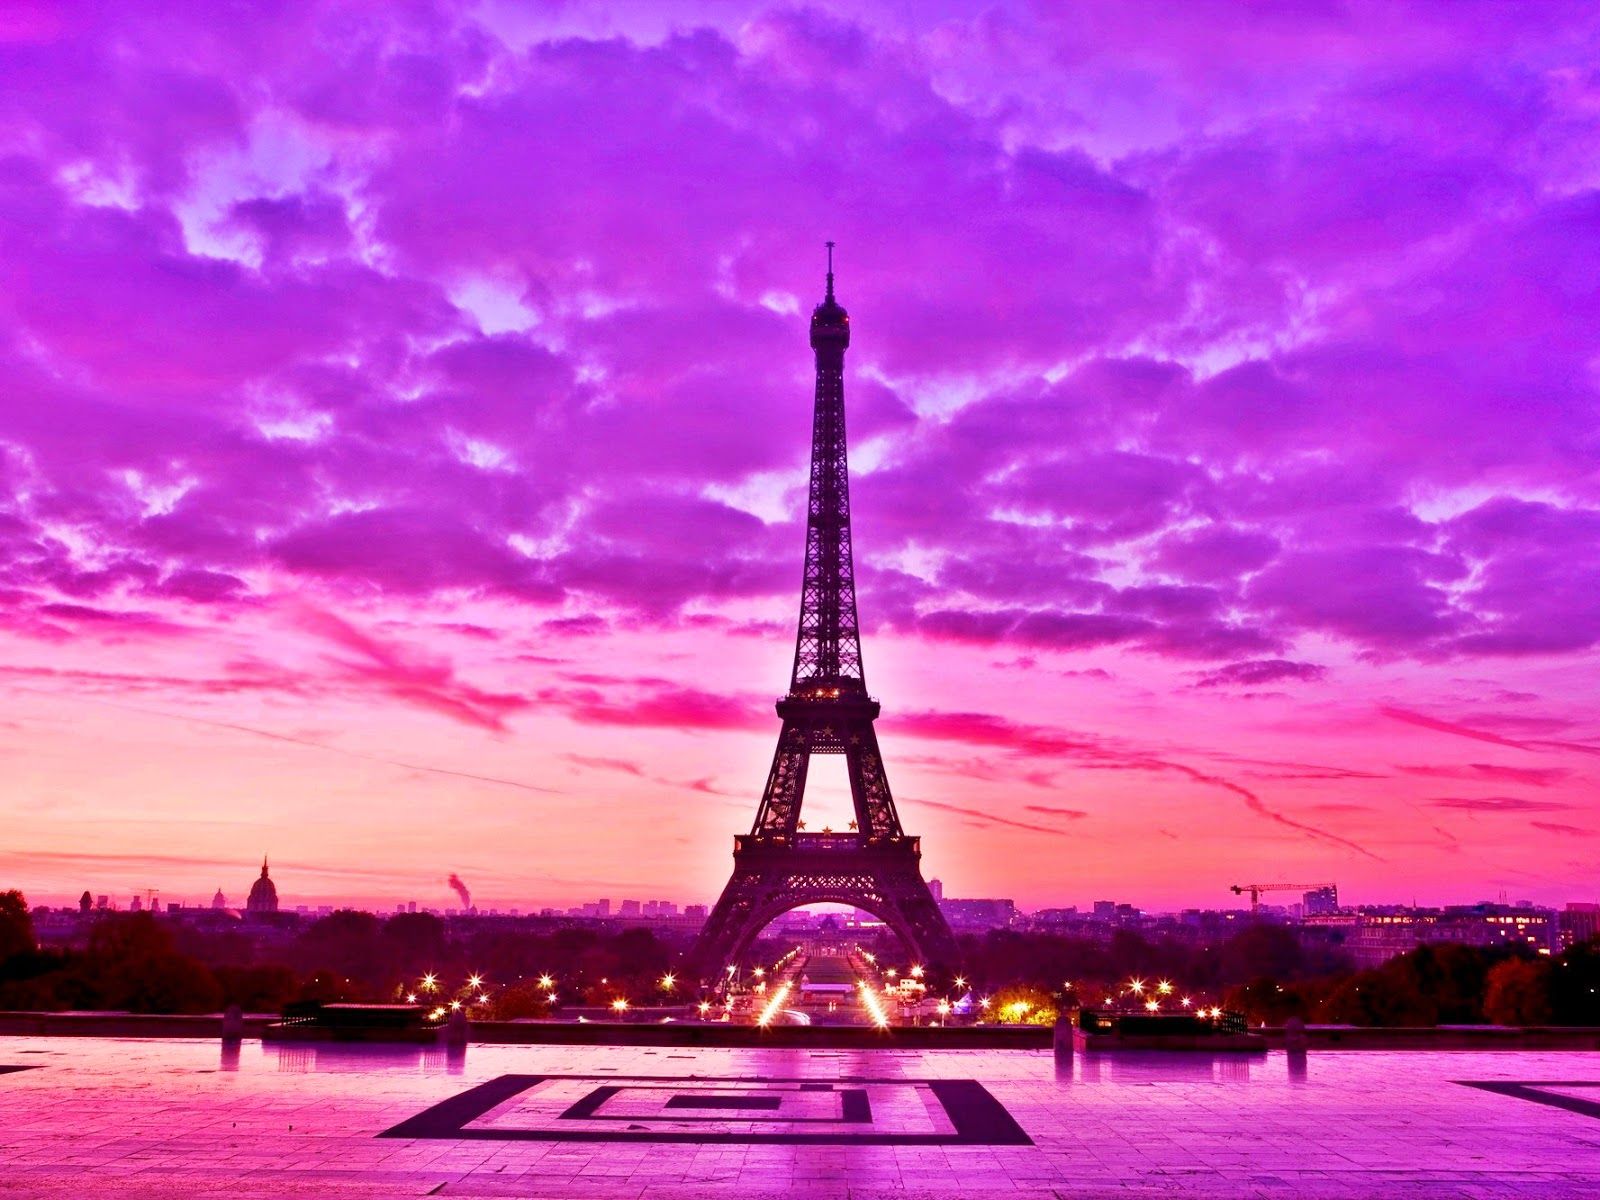 Pink Paris Eiffel Tower Wallpaper on .hipwallpaper.com